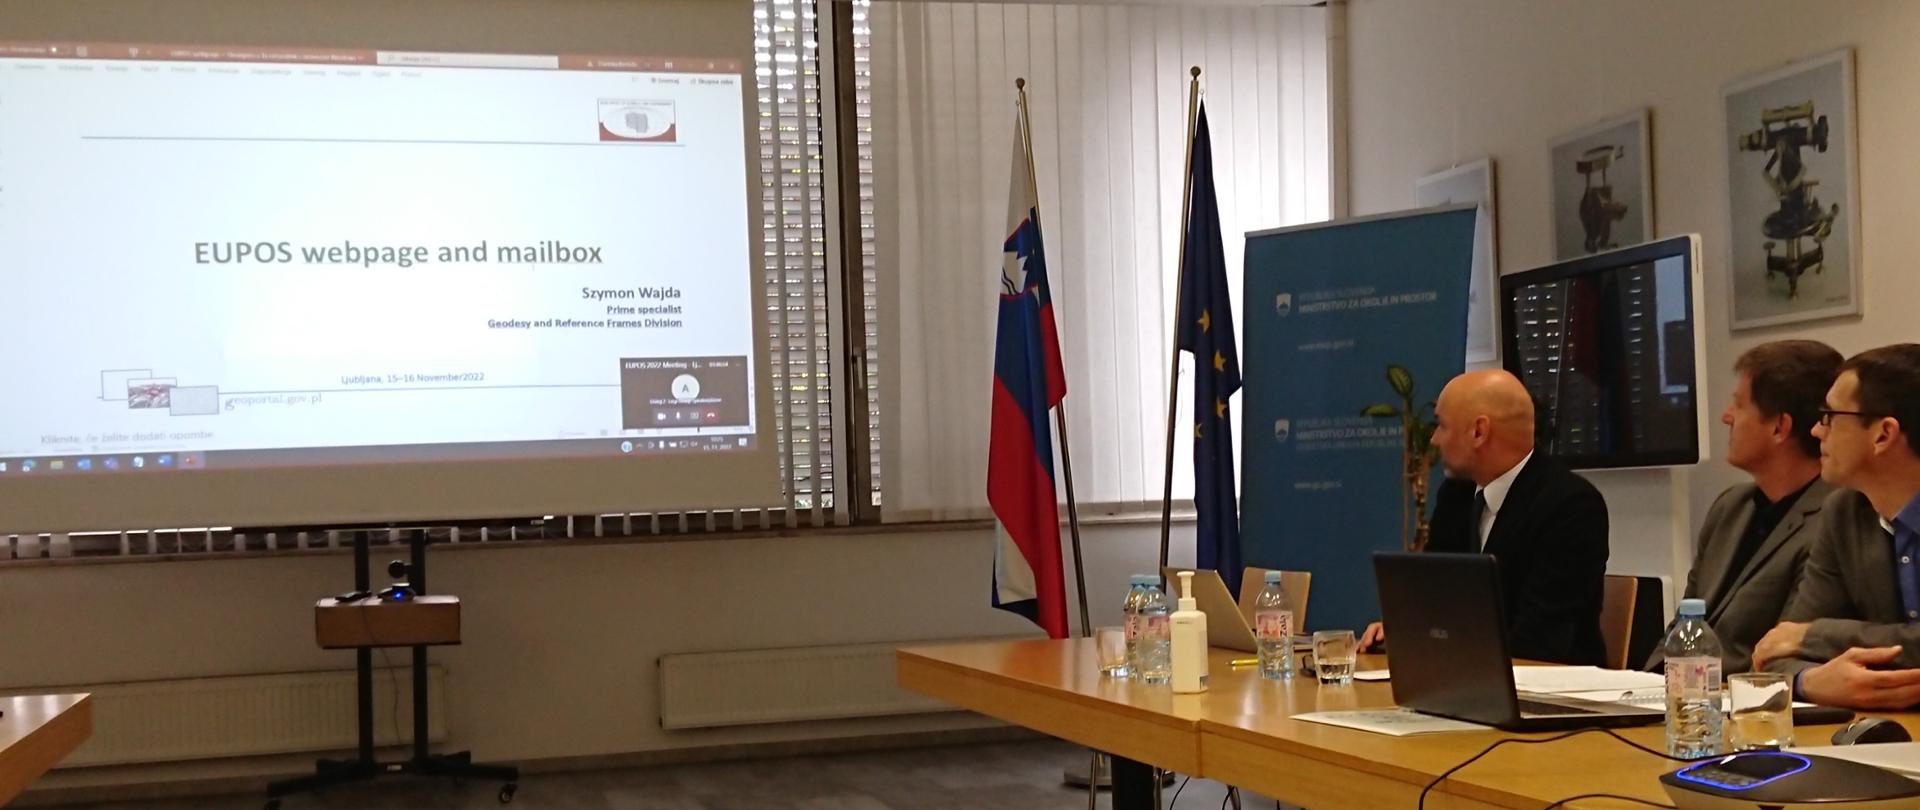 Zdjęcie przedstawia Szymona Wajdę prezentującego stronę EUPOS